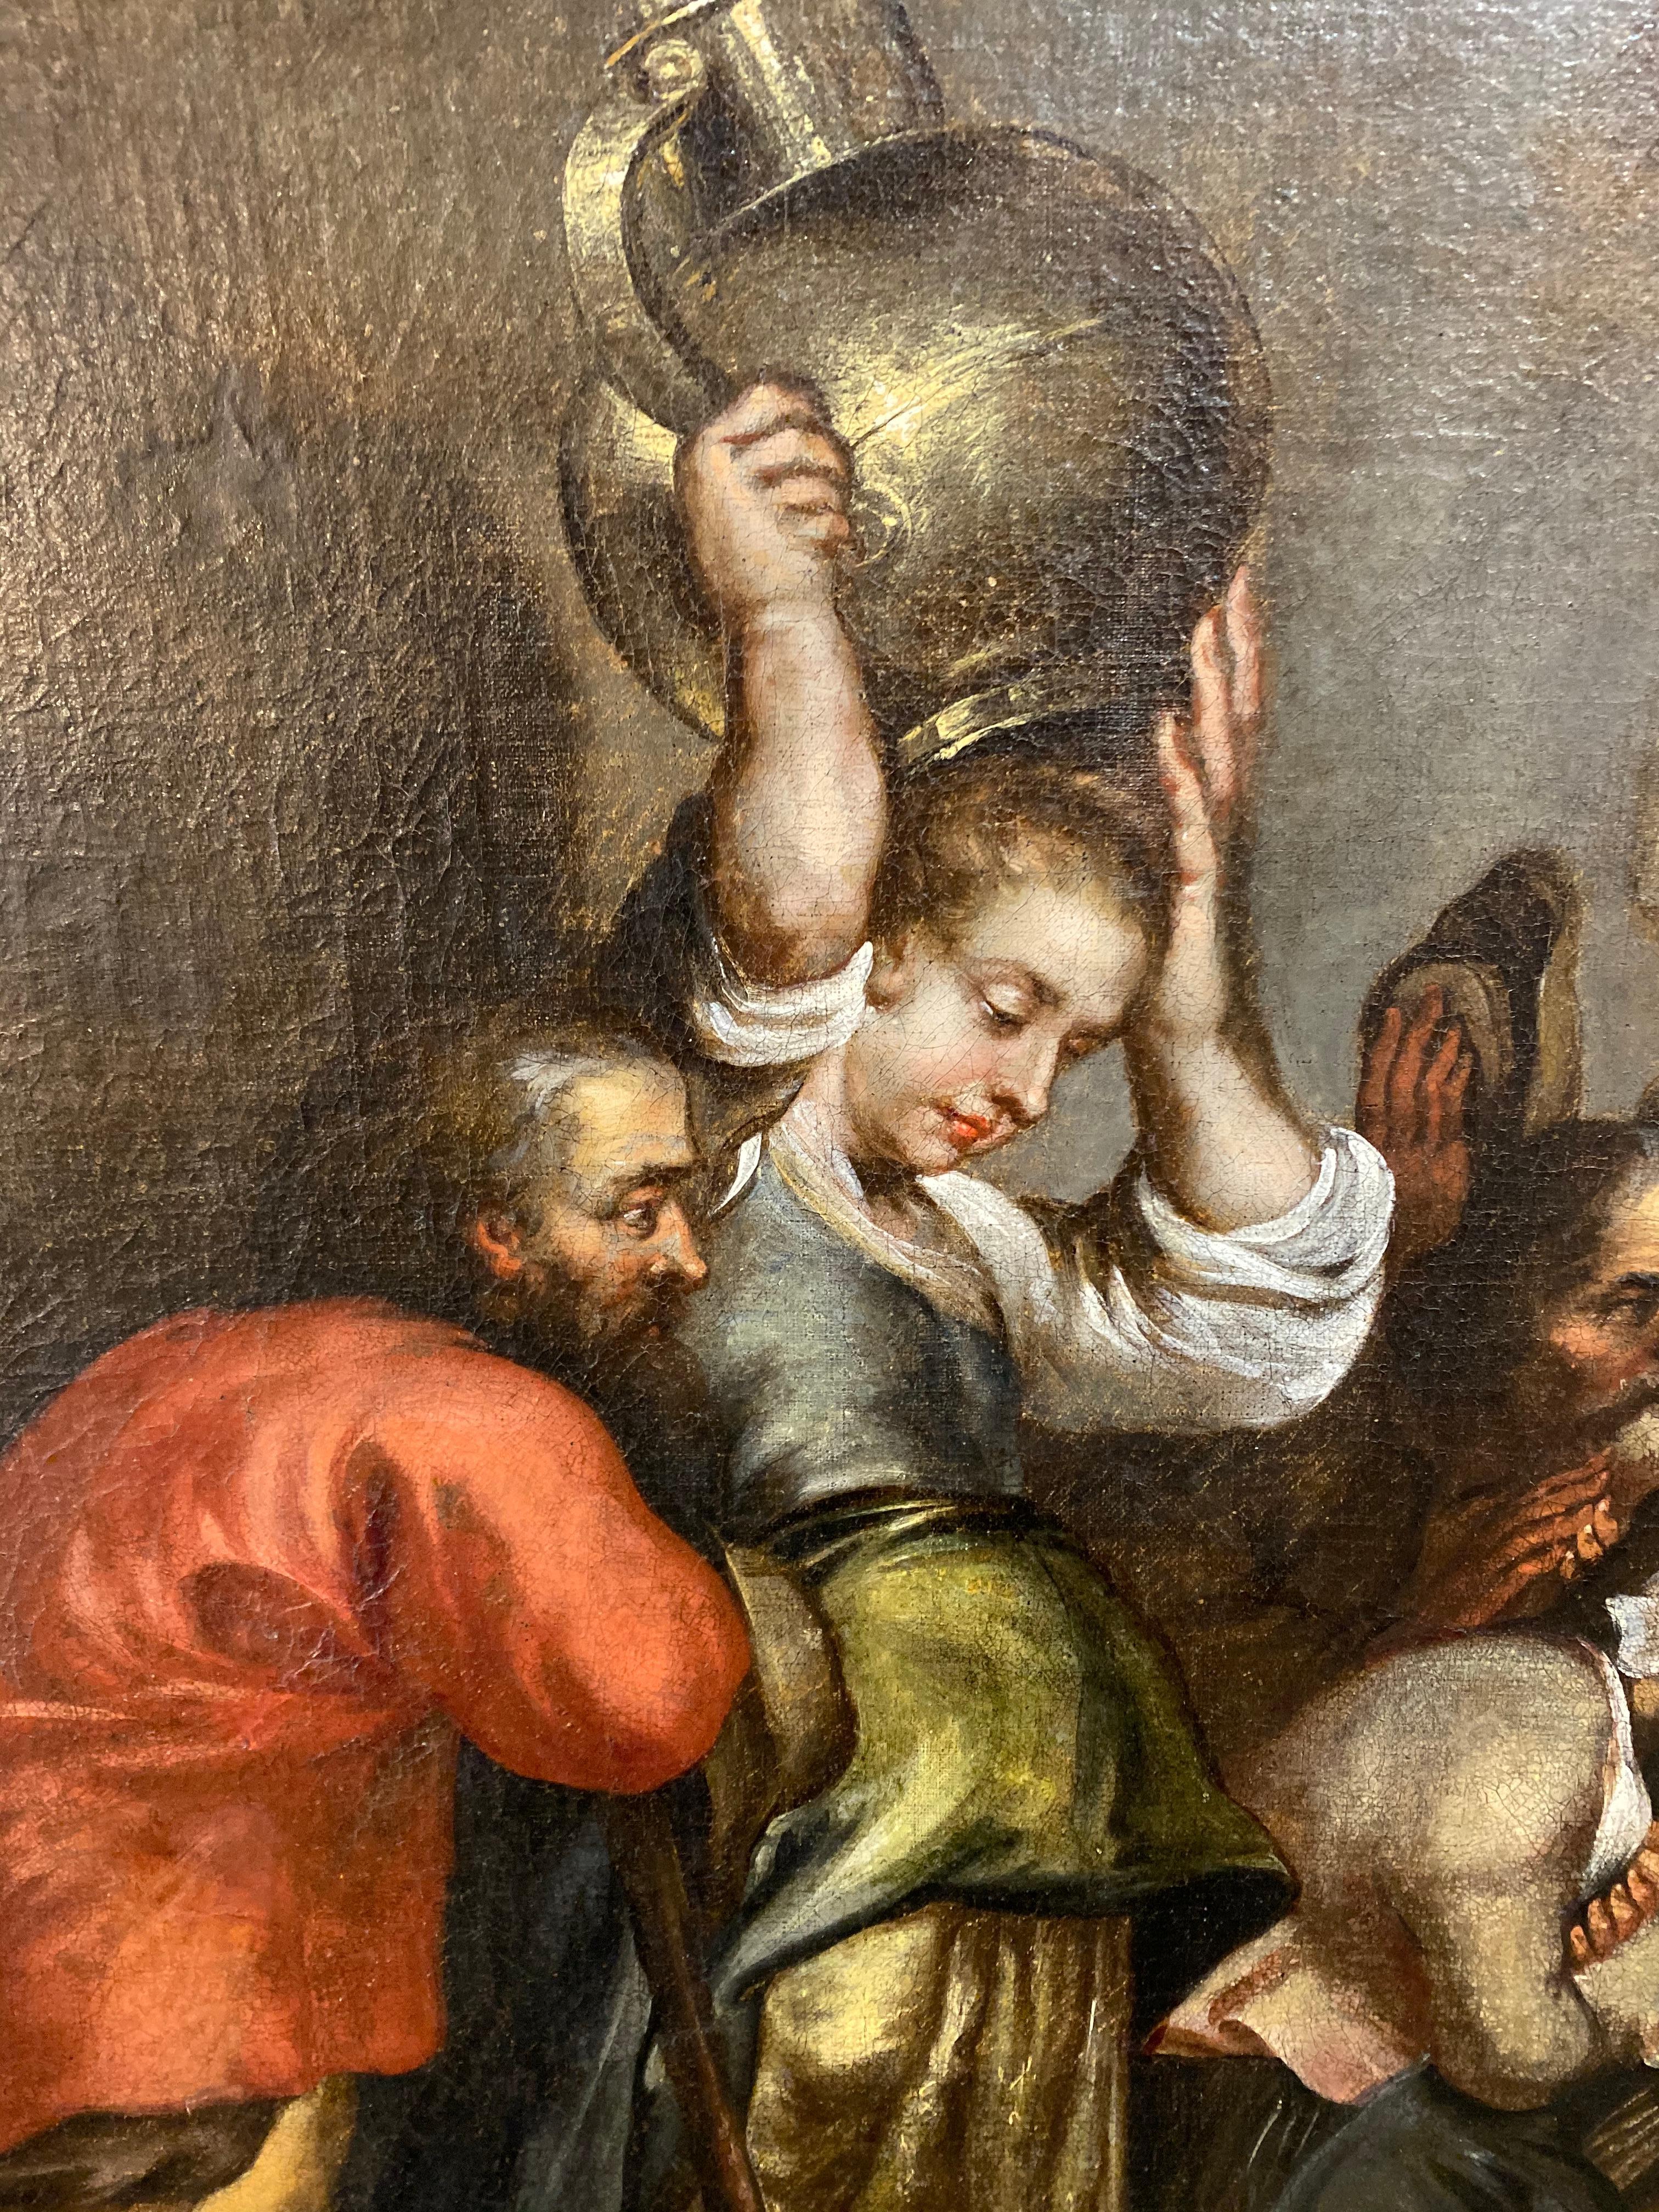 Dieses holländische Gemälde, das die Geburt Christi darstellt, ist in Öl auf Leinwand gemalt und stammt aus dem Jahr 1750. 

Abmessungen: 45.5